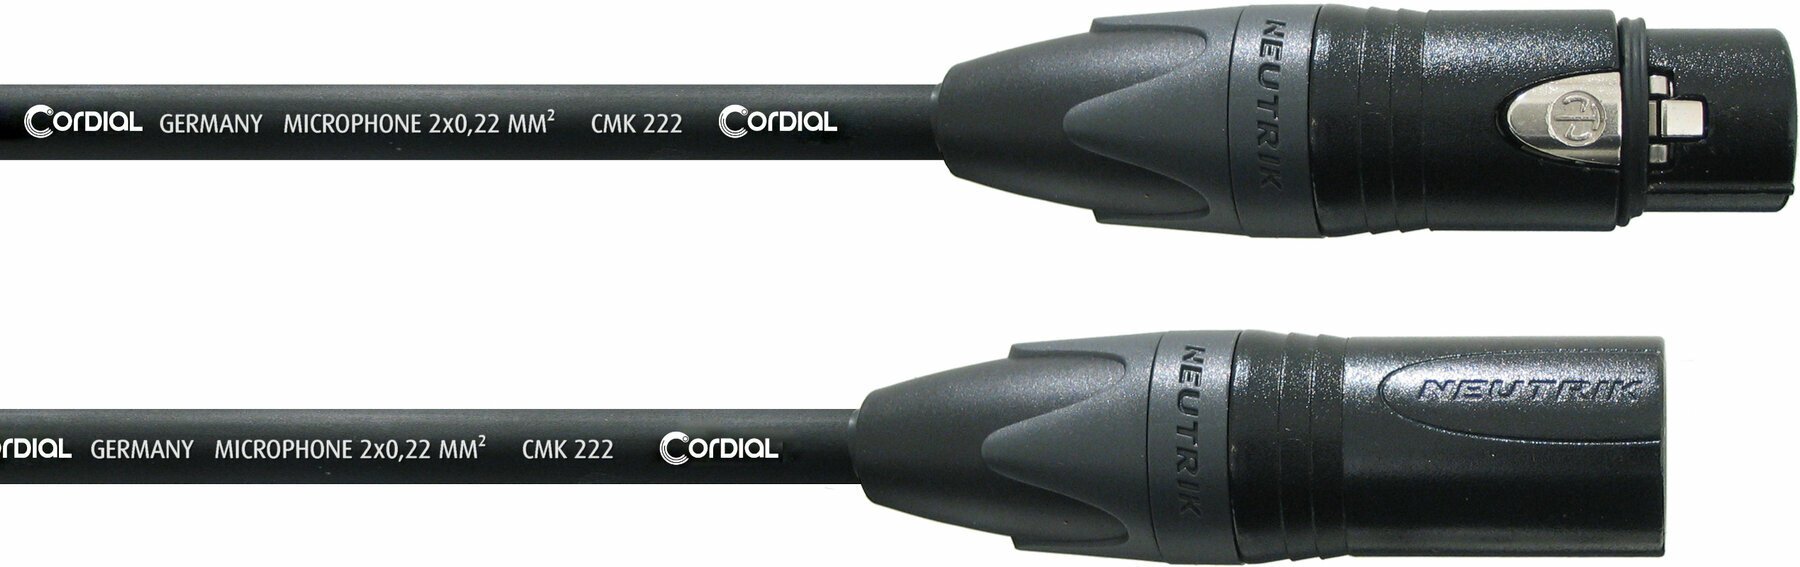 Cablu complet pentru microfoane Cordial CPM 15 FM Negru 15 m